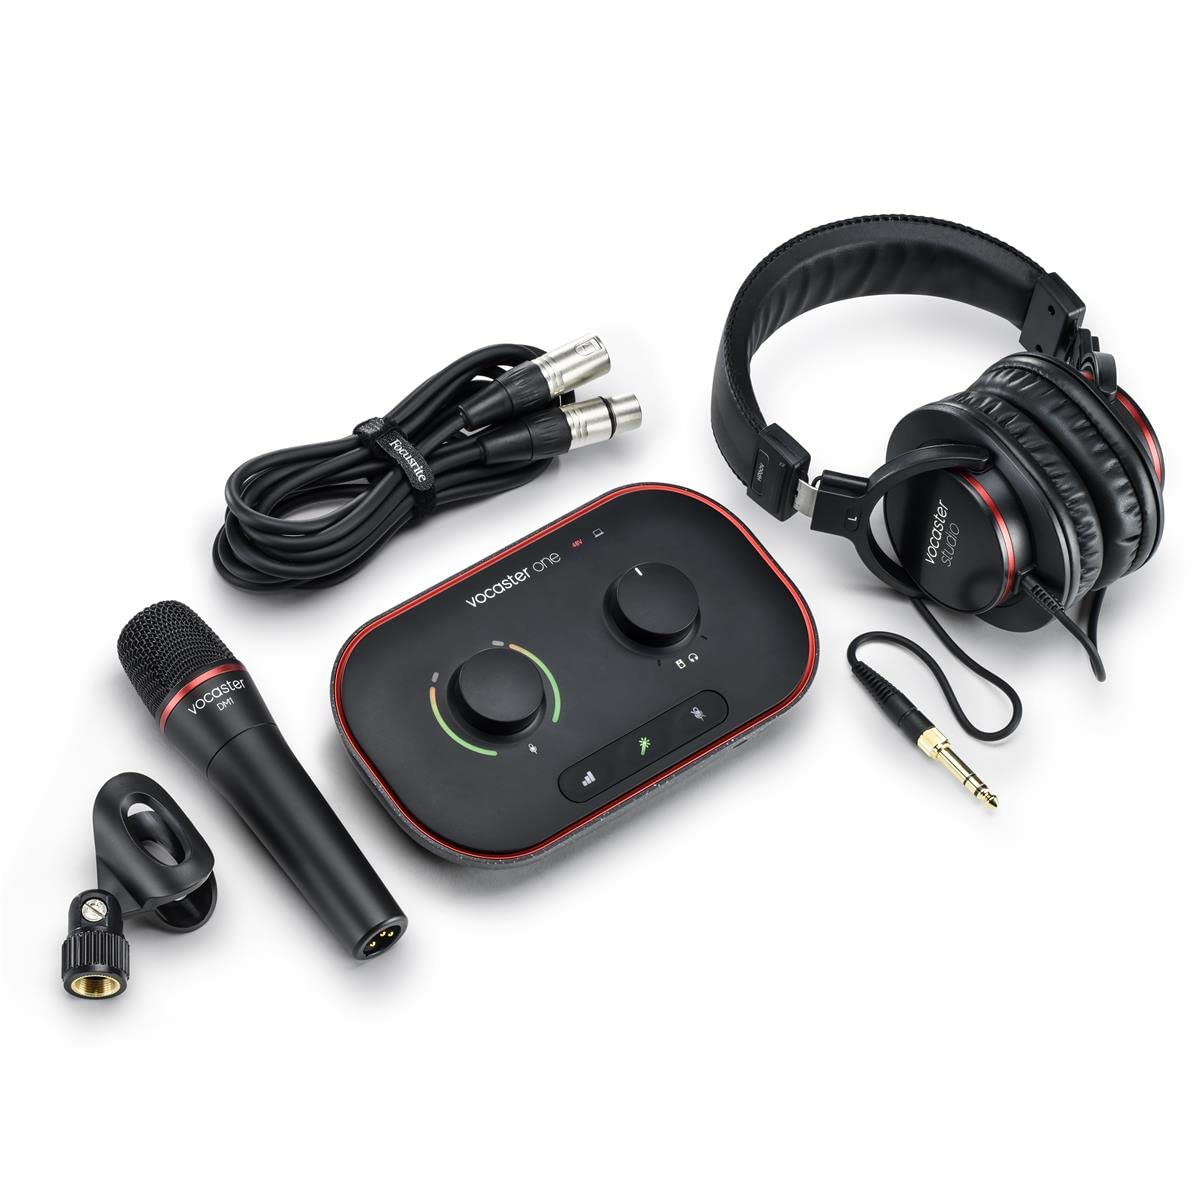 Focusrite Vocaster One Studio – Podcast-Audio-Interface für Solo-Aufnahmen, mit dem Mikrofon Vocaster DM1 in Studioqualität und den Kopfhörern HP60v.